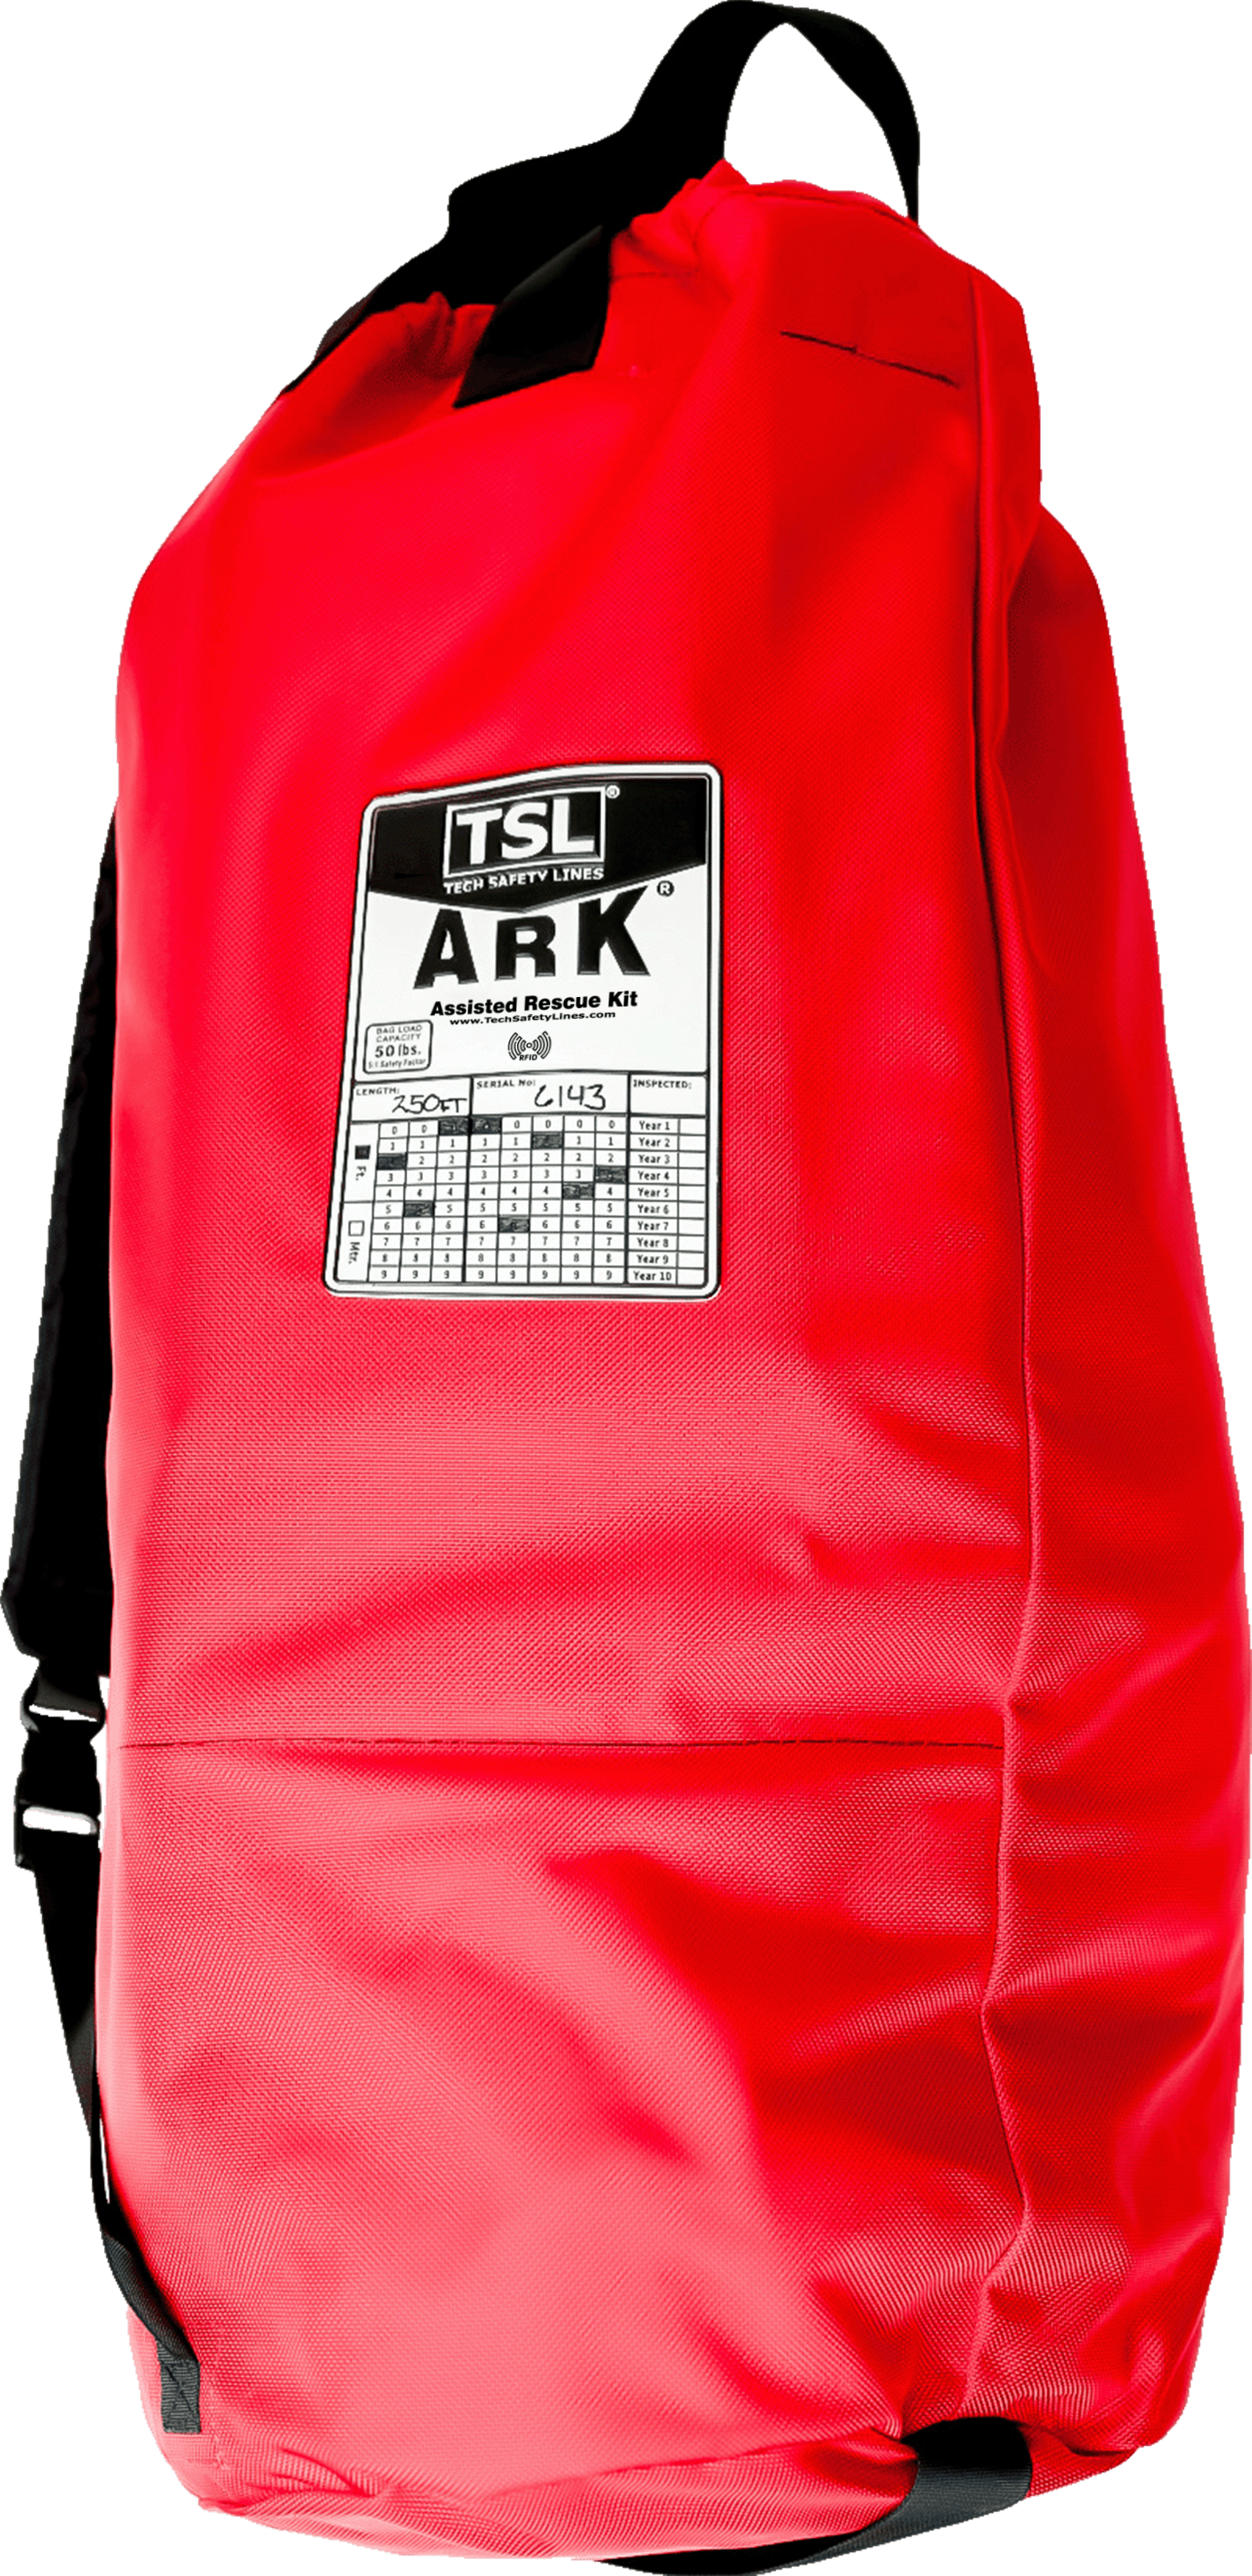 ARK kit bag